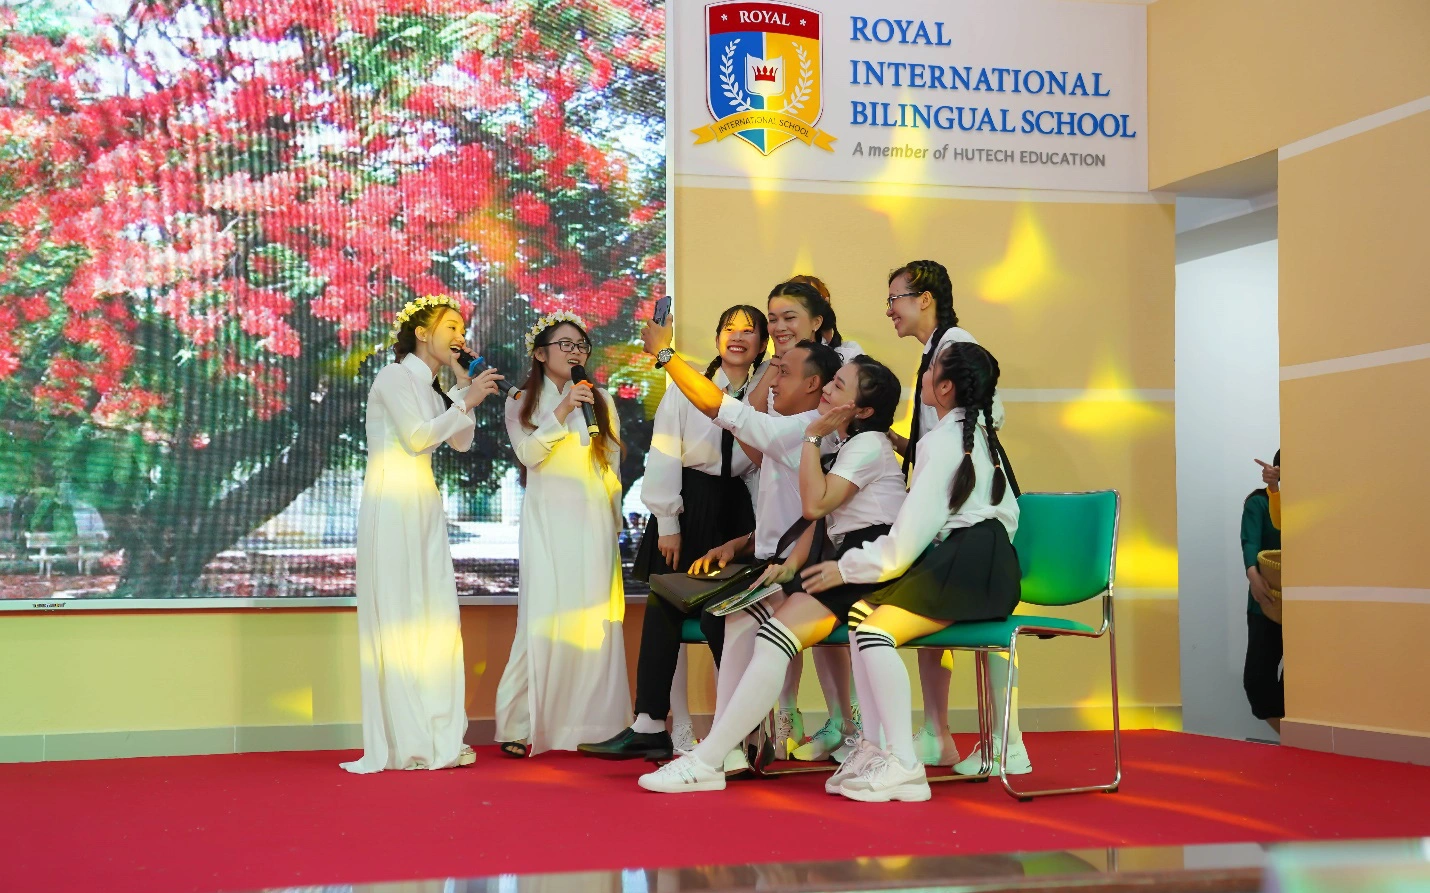 NSƯT Công Ninh, ca sĩ Sỹ Luân bất ngờ trước tài năng của giáo viên trường Royal School